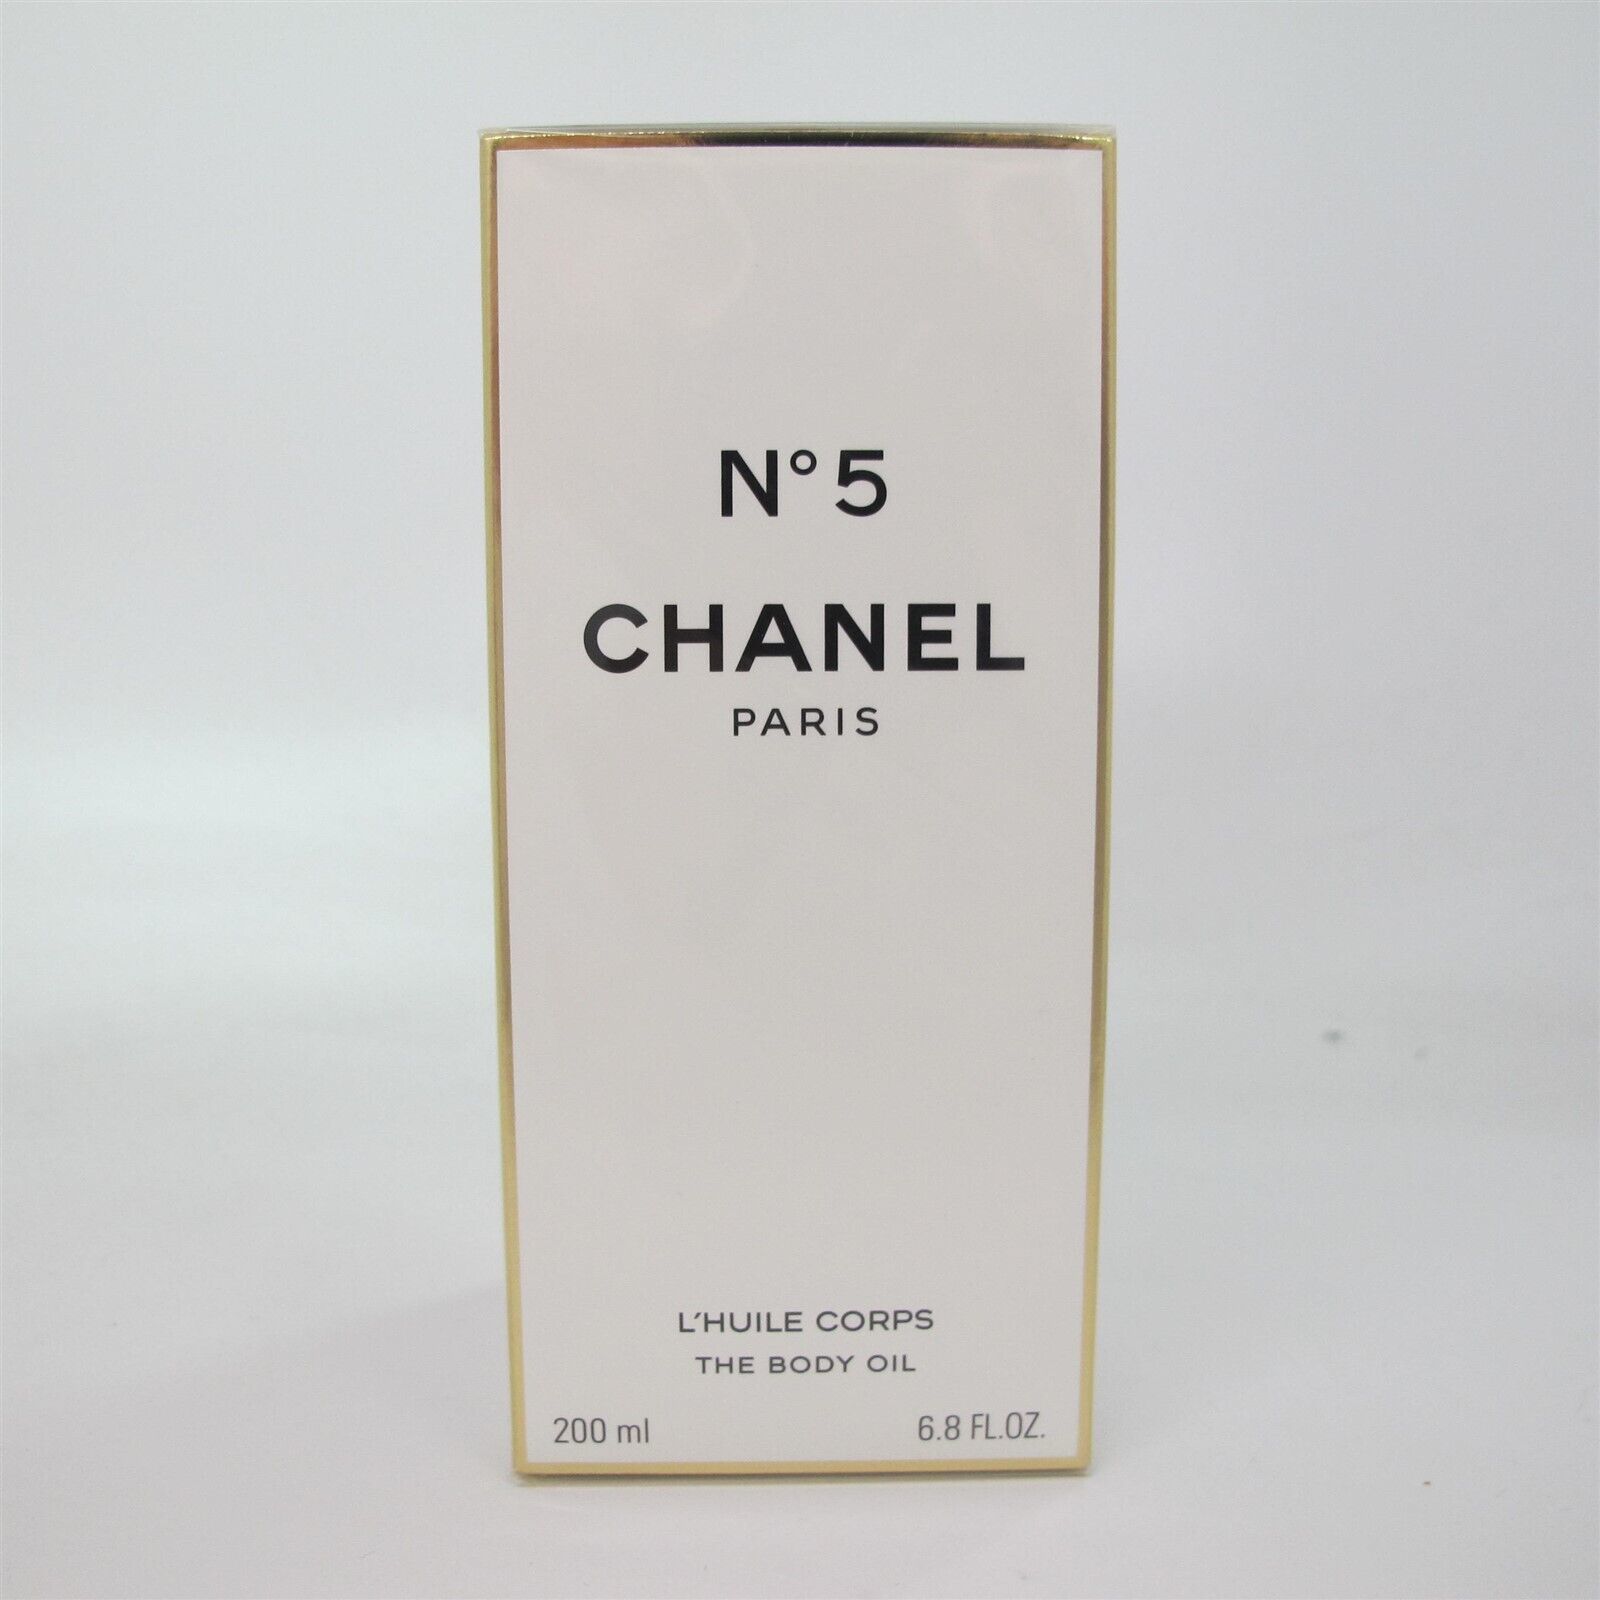 CHANEL No. 5 by Chanel 200 ml/ 6.8 oz The Body Oil NIB RARE! - $296.99